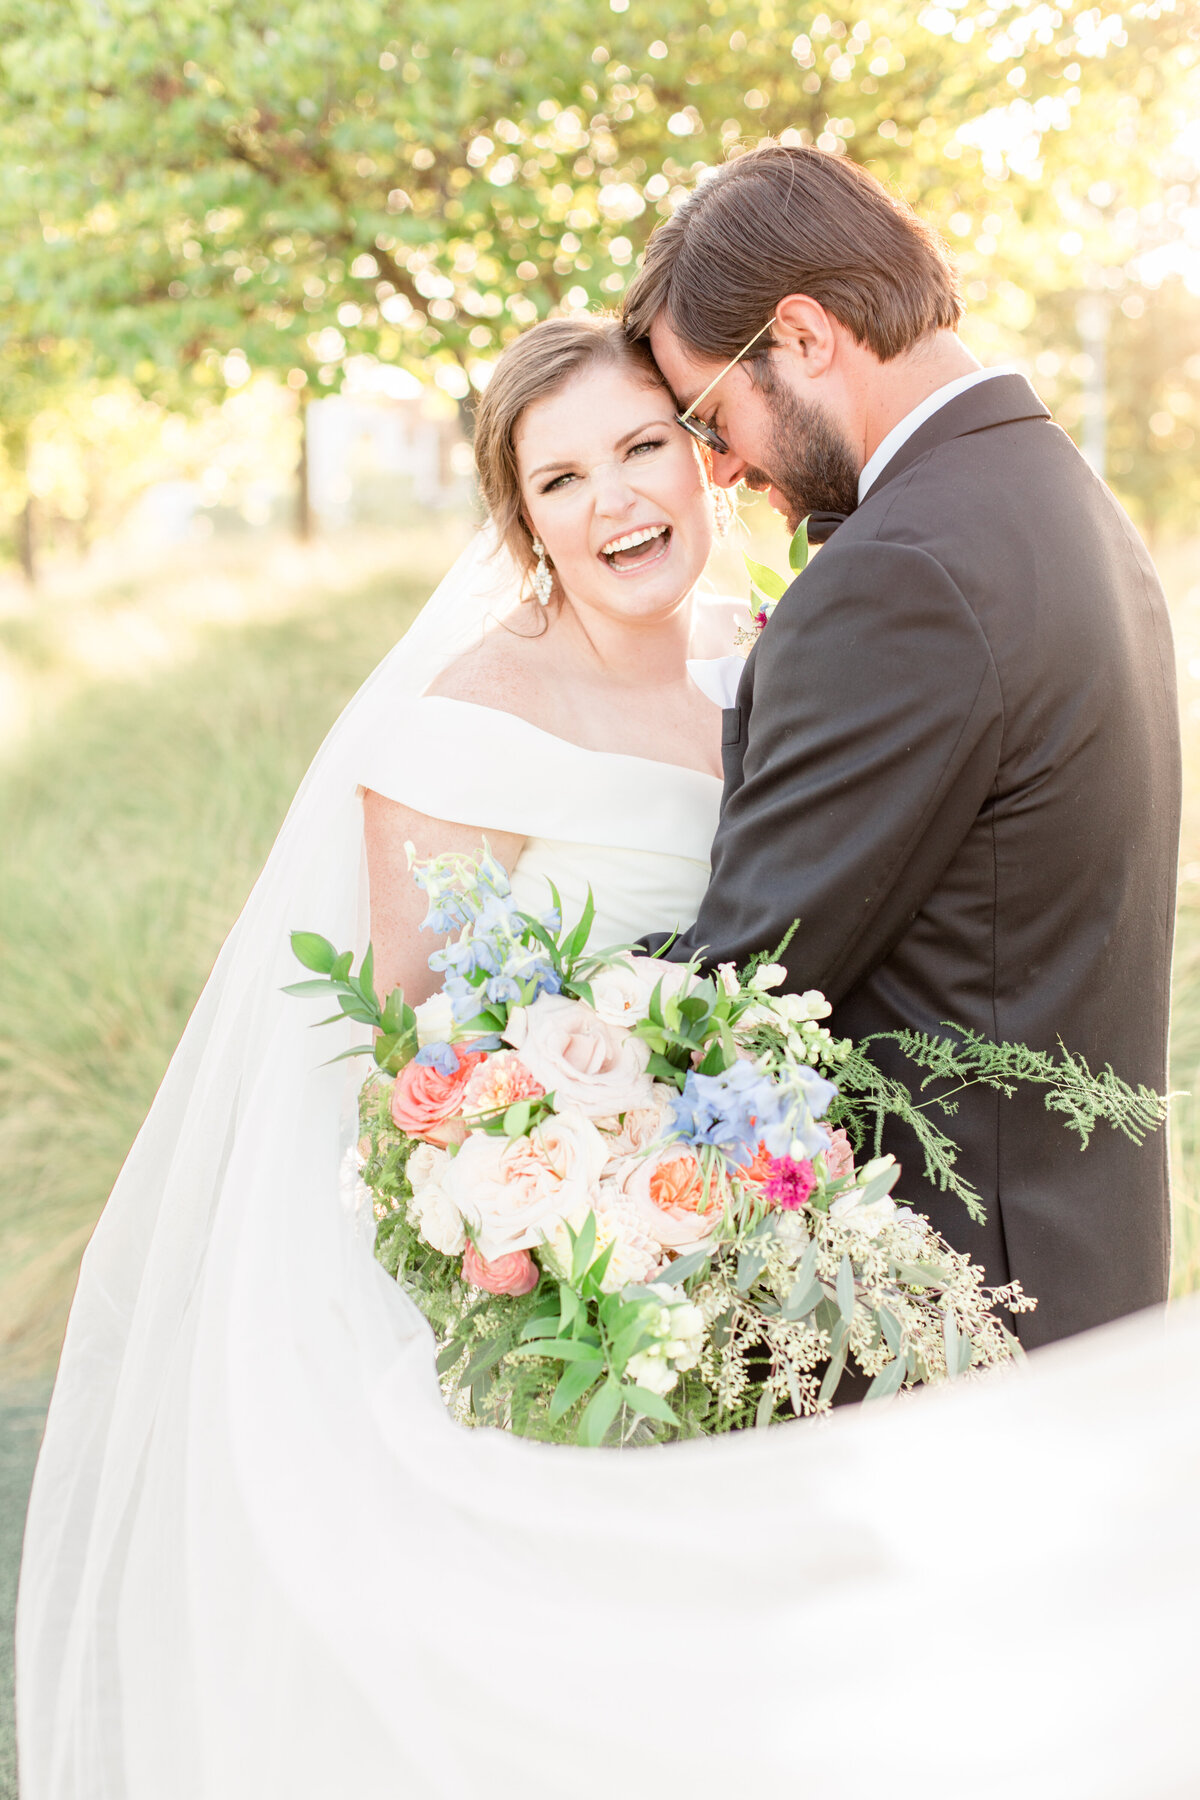 Birmingham, Alabama Wedding & Engagement Photographers - Katie & Alec Photography 1